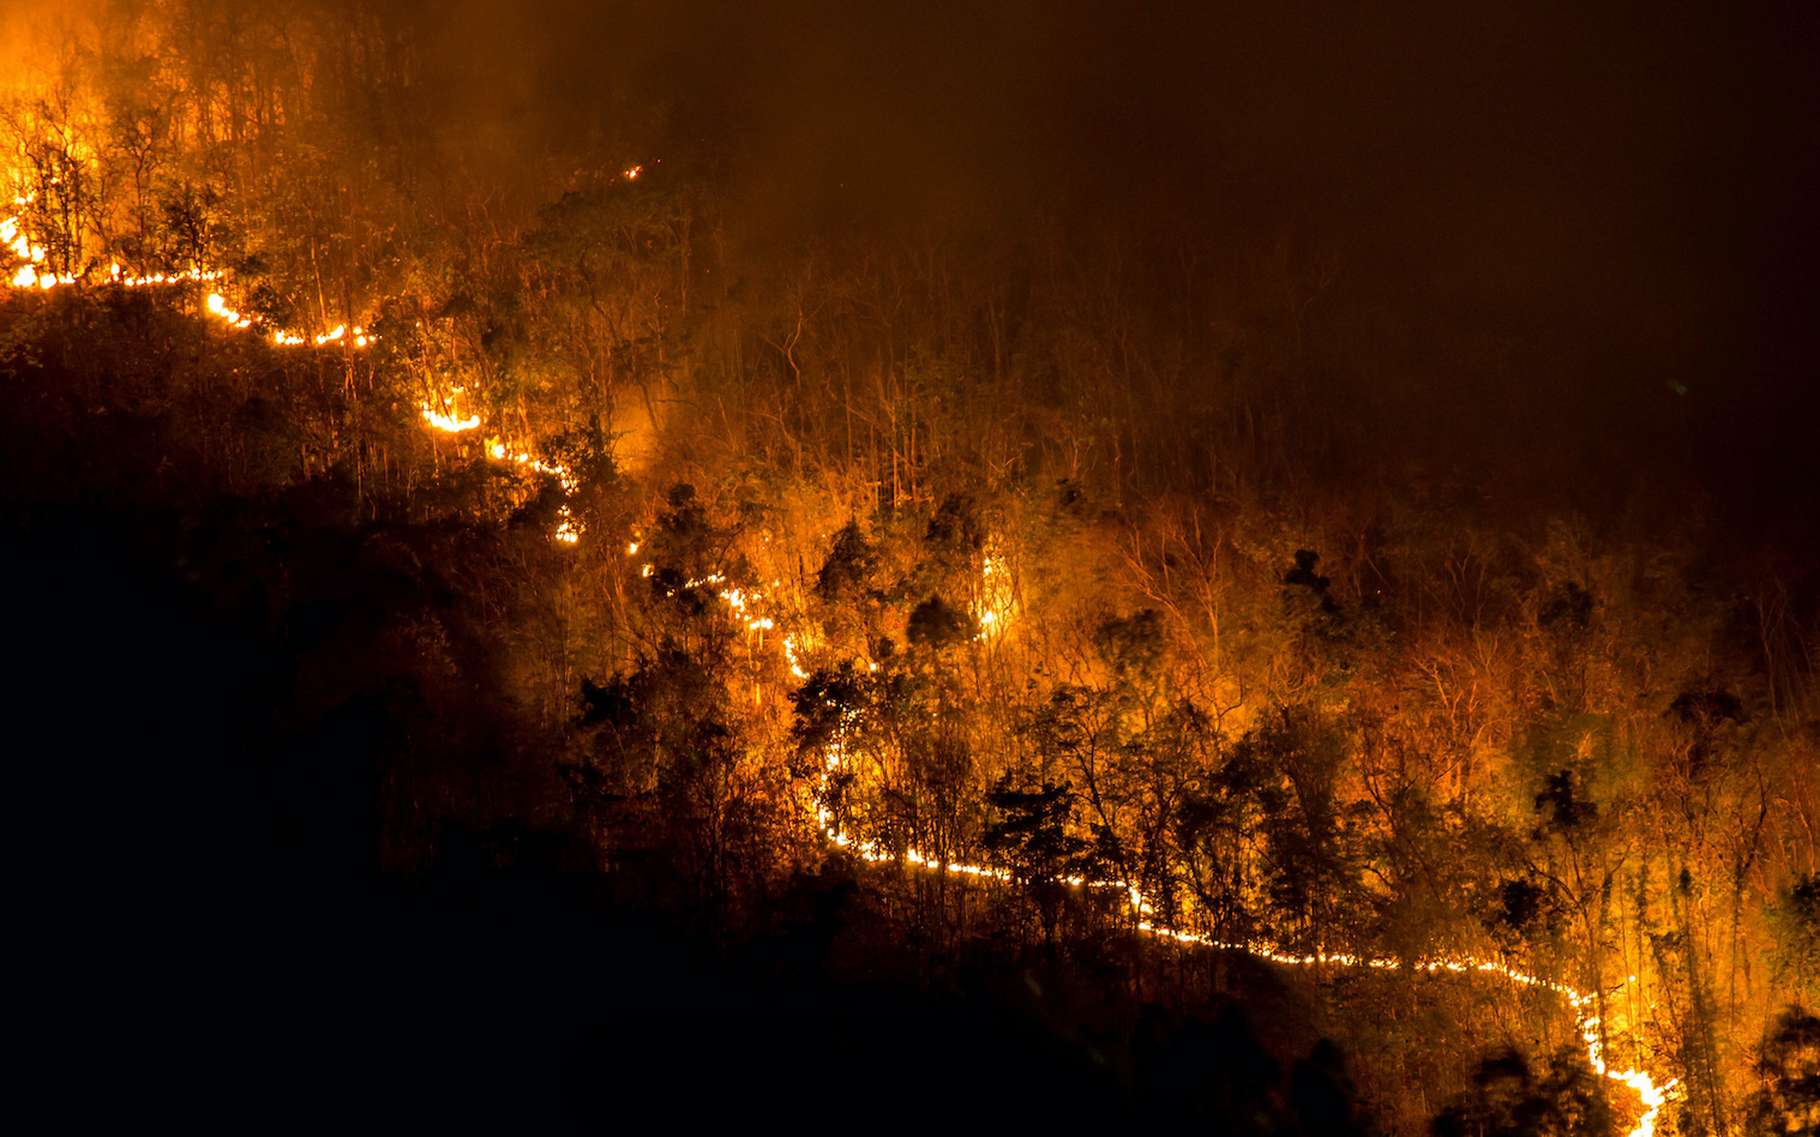 Les scientifiques annoncent une recrudescence des mégafeux de forêt dans les années qui viennent. Des feux de forêt qui seraient aussi bien dommageables à la santé humaine qu’à la biodiversité et au climat. Ainsi les experts appellent à la mise en œuvre de plus de mesures de prévention. © prirach, Adobe Stock